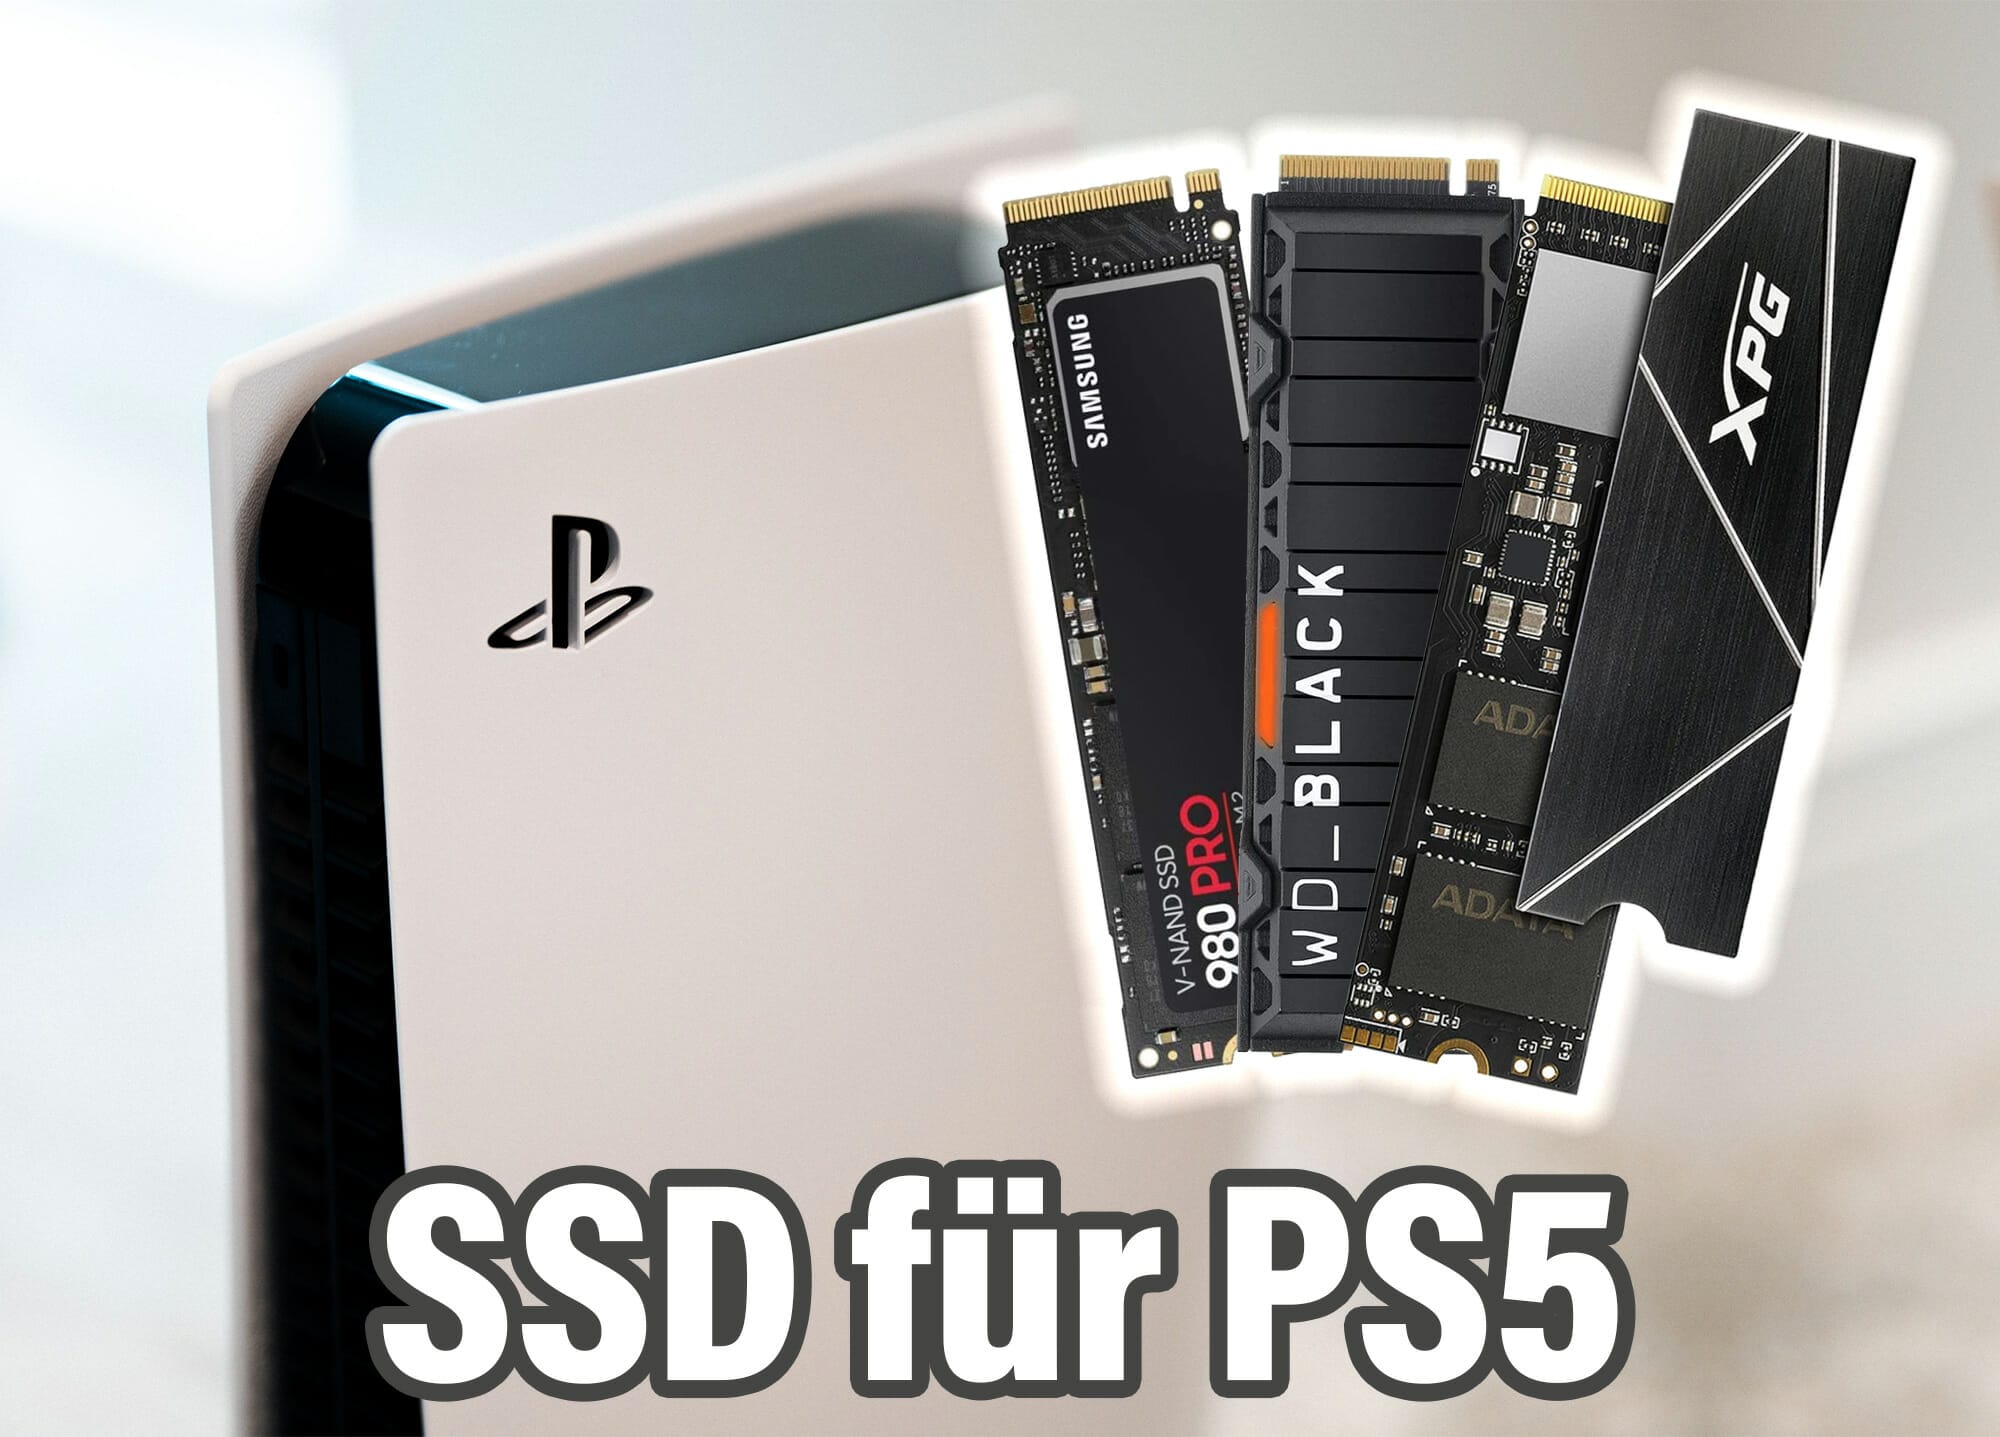 die PlayStation SSD-Festplatten für 5 (Speichererweiterung)